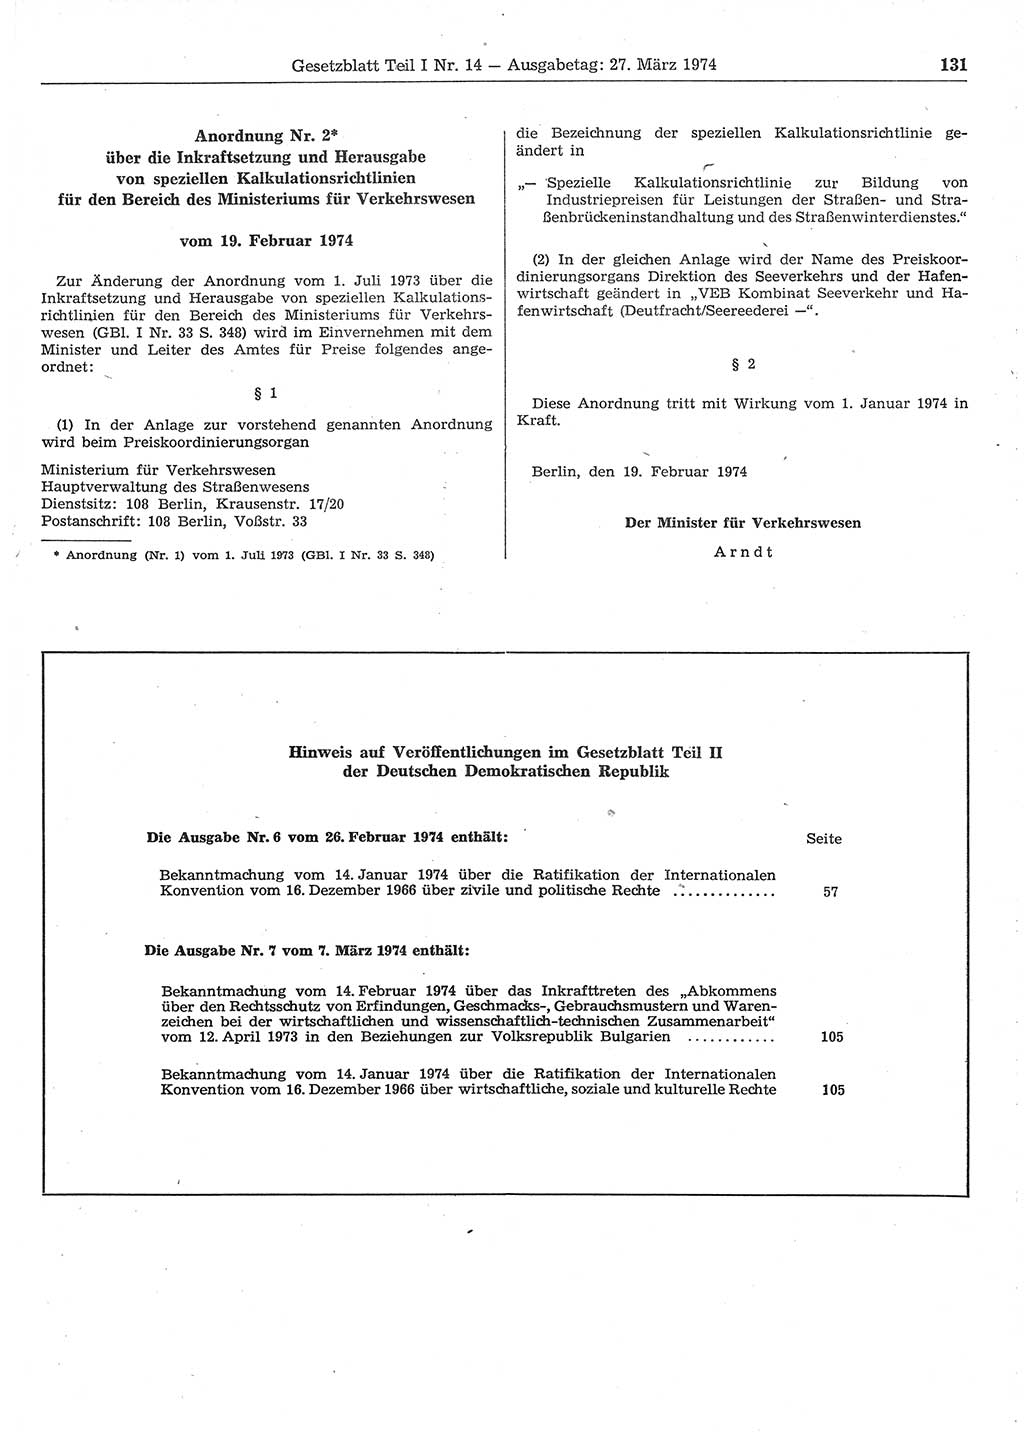 Gesetzblatt (GBl.) der Deutschen Demokratischen Republik (DDR) Teil Ⅰ 1974, Seite 131 (GBl. DDR Ⅰ 1974, S. 131)